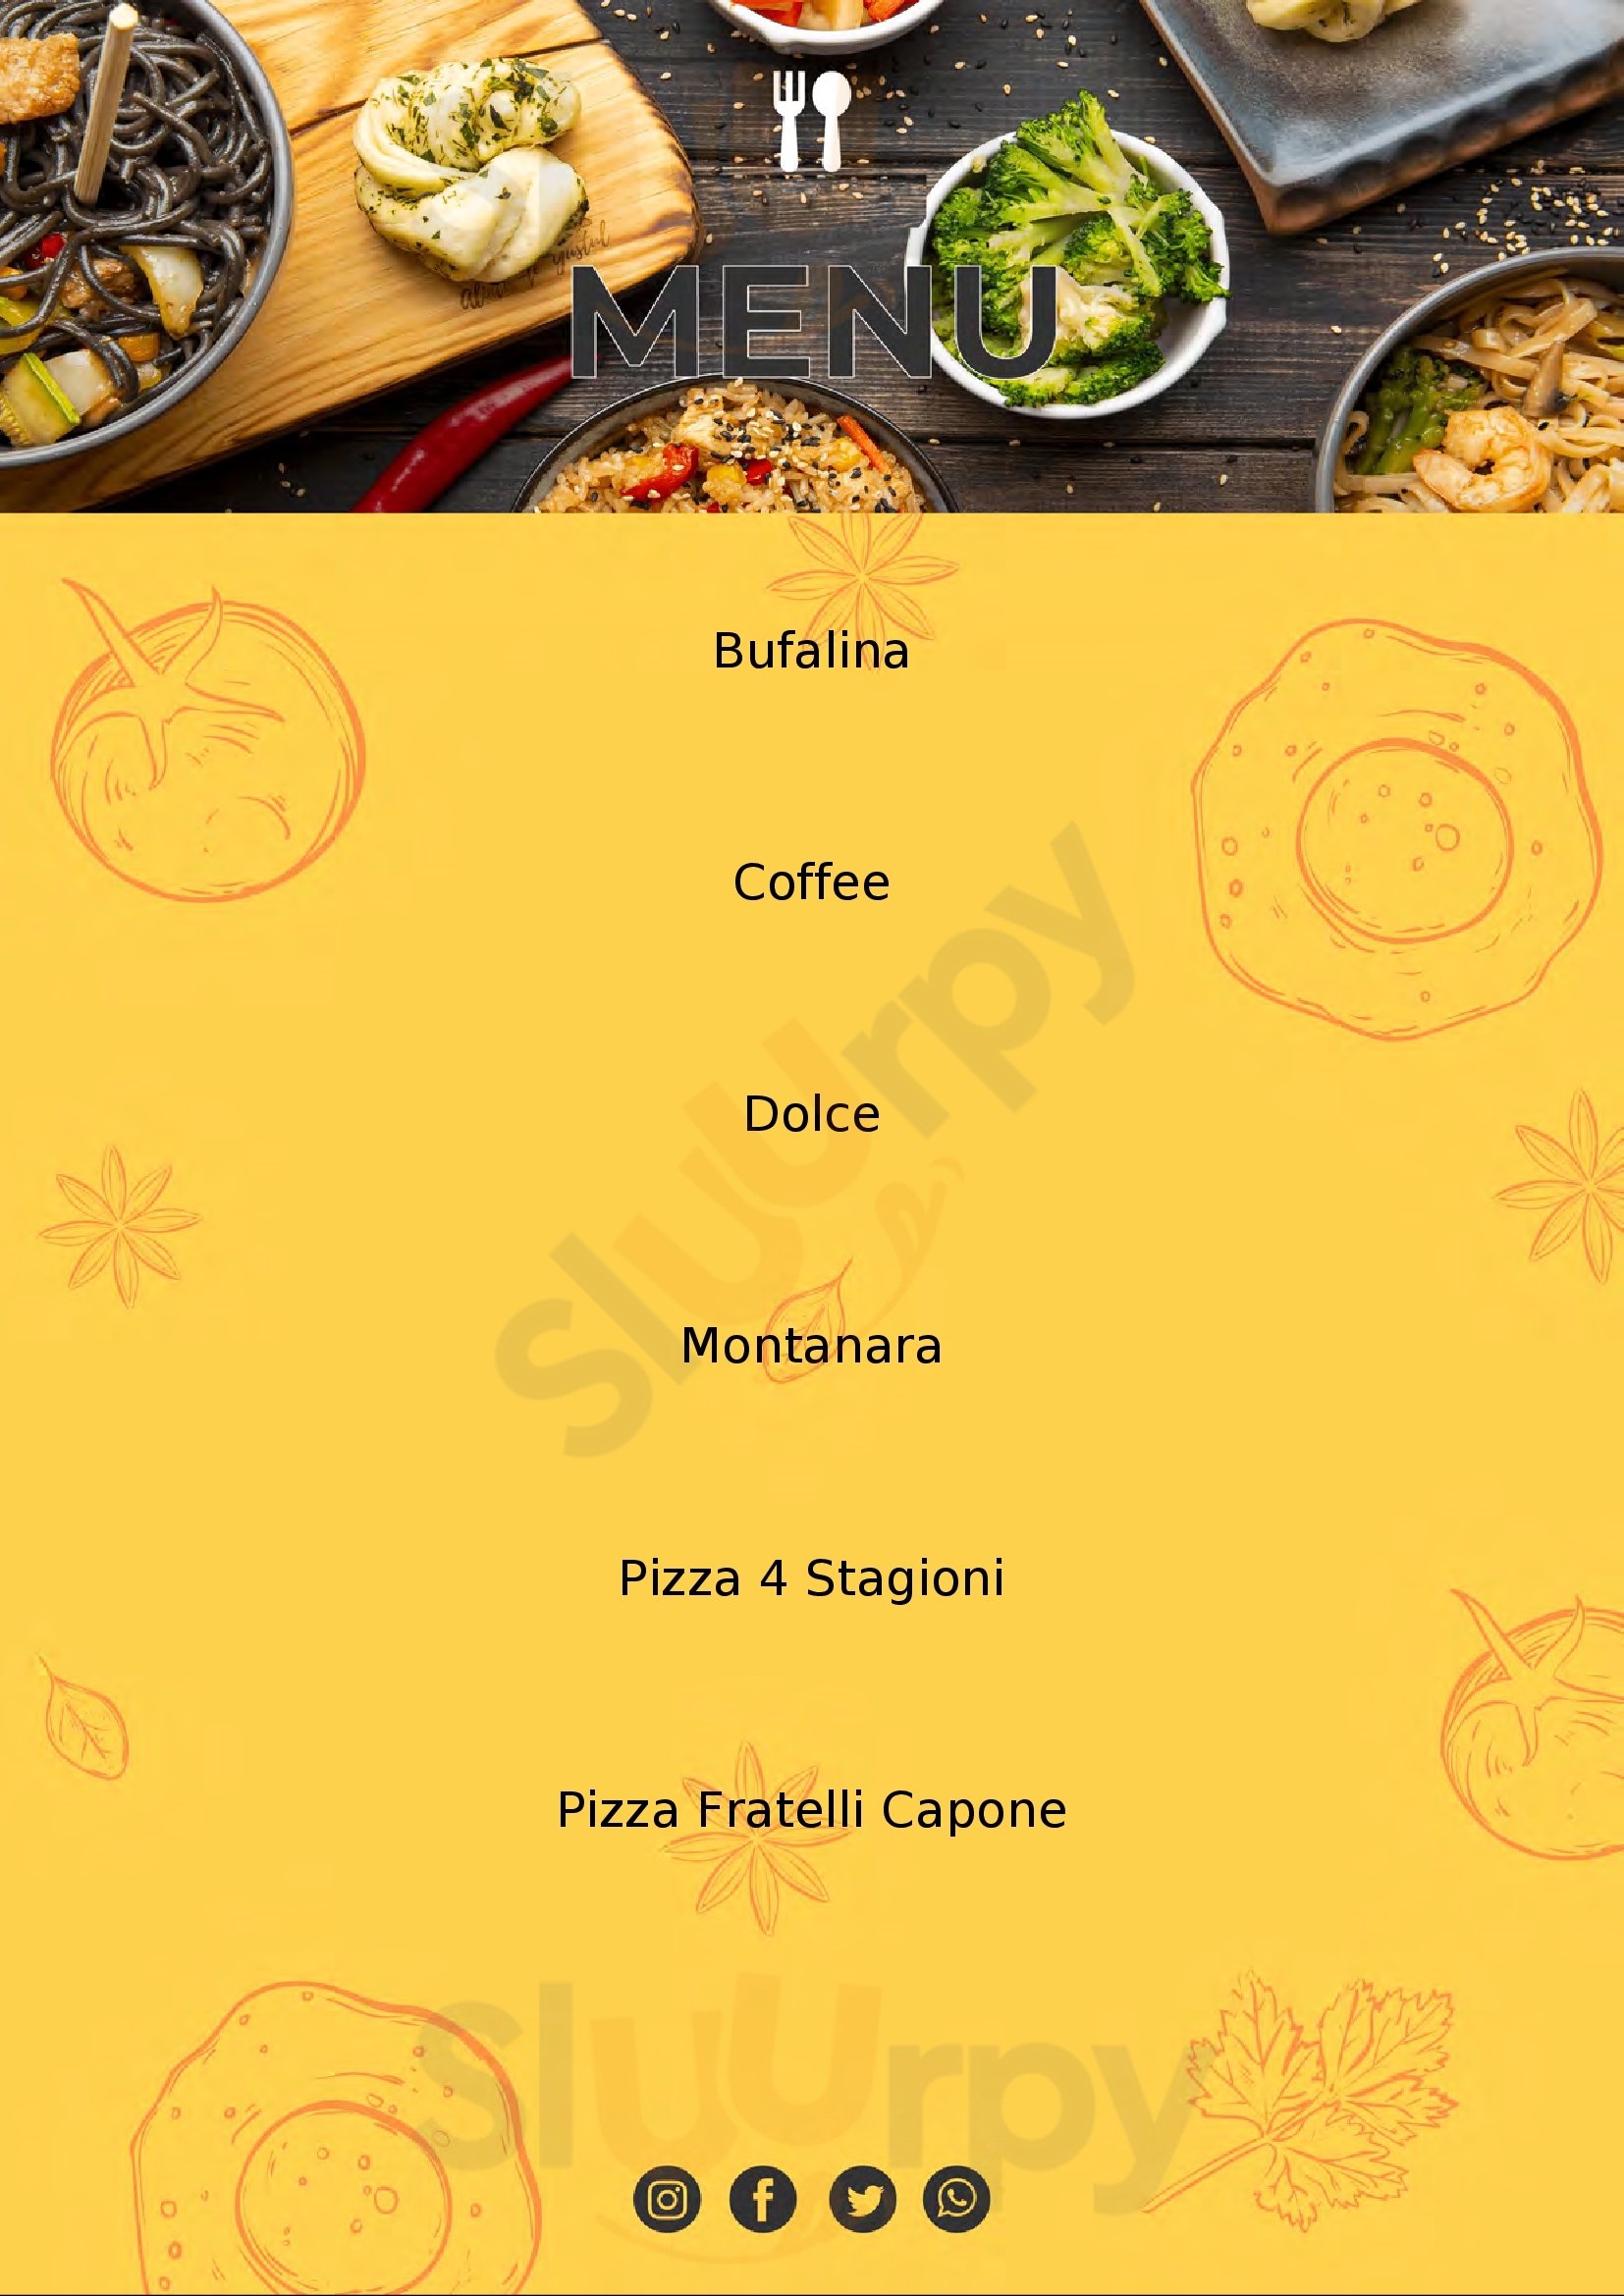 Pizzeria Malafemmena Lecce menù 1 pagina